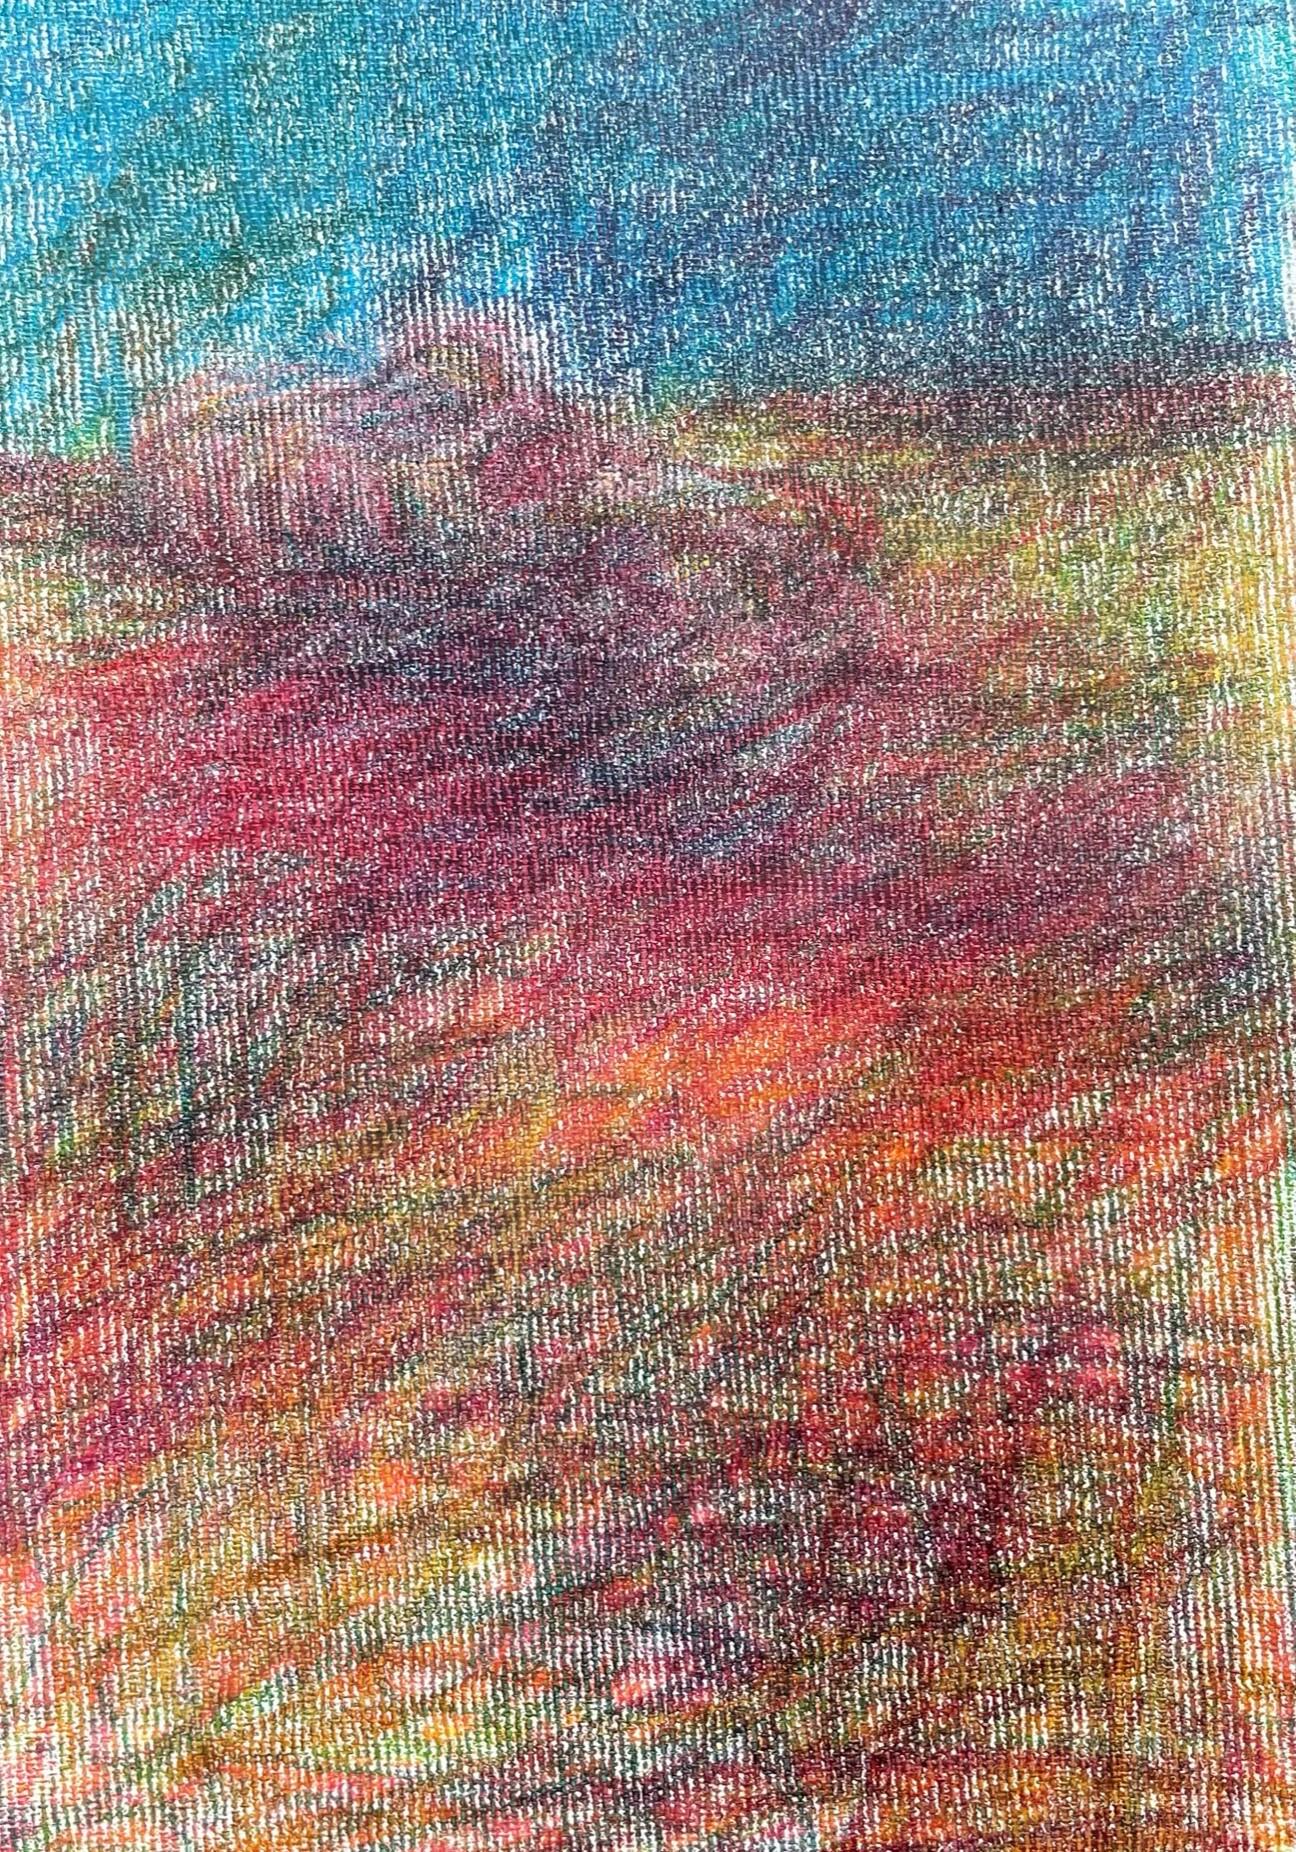 Body in the Field n° 5 - Bleu, rouge, dessin, crayon de couleur - Marron Landscape Art par Zsolt Berszán